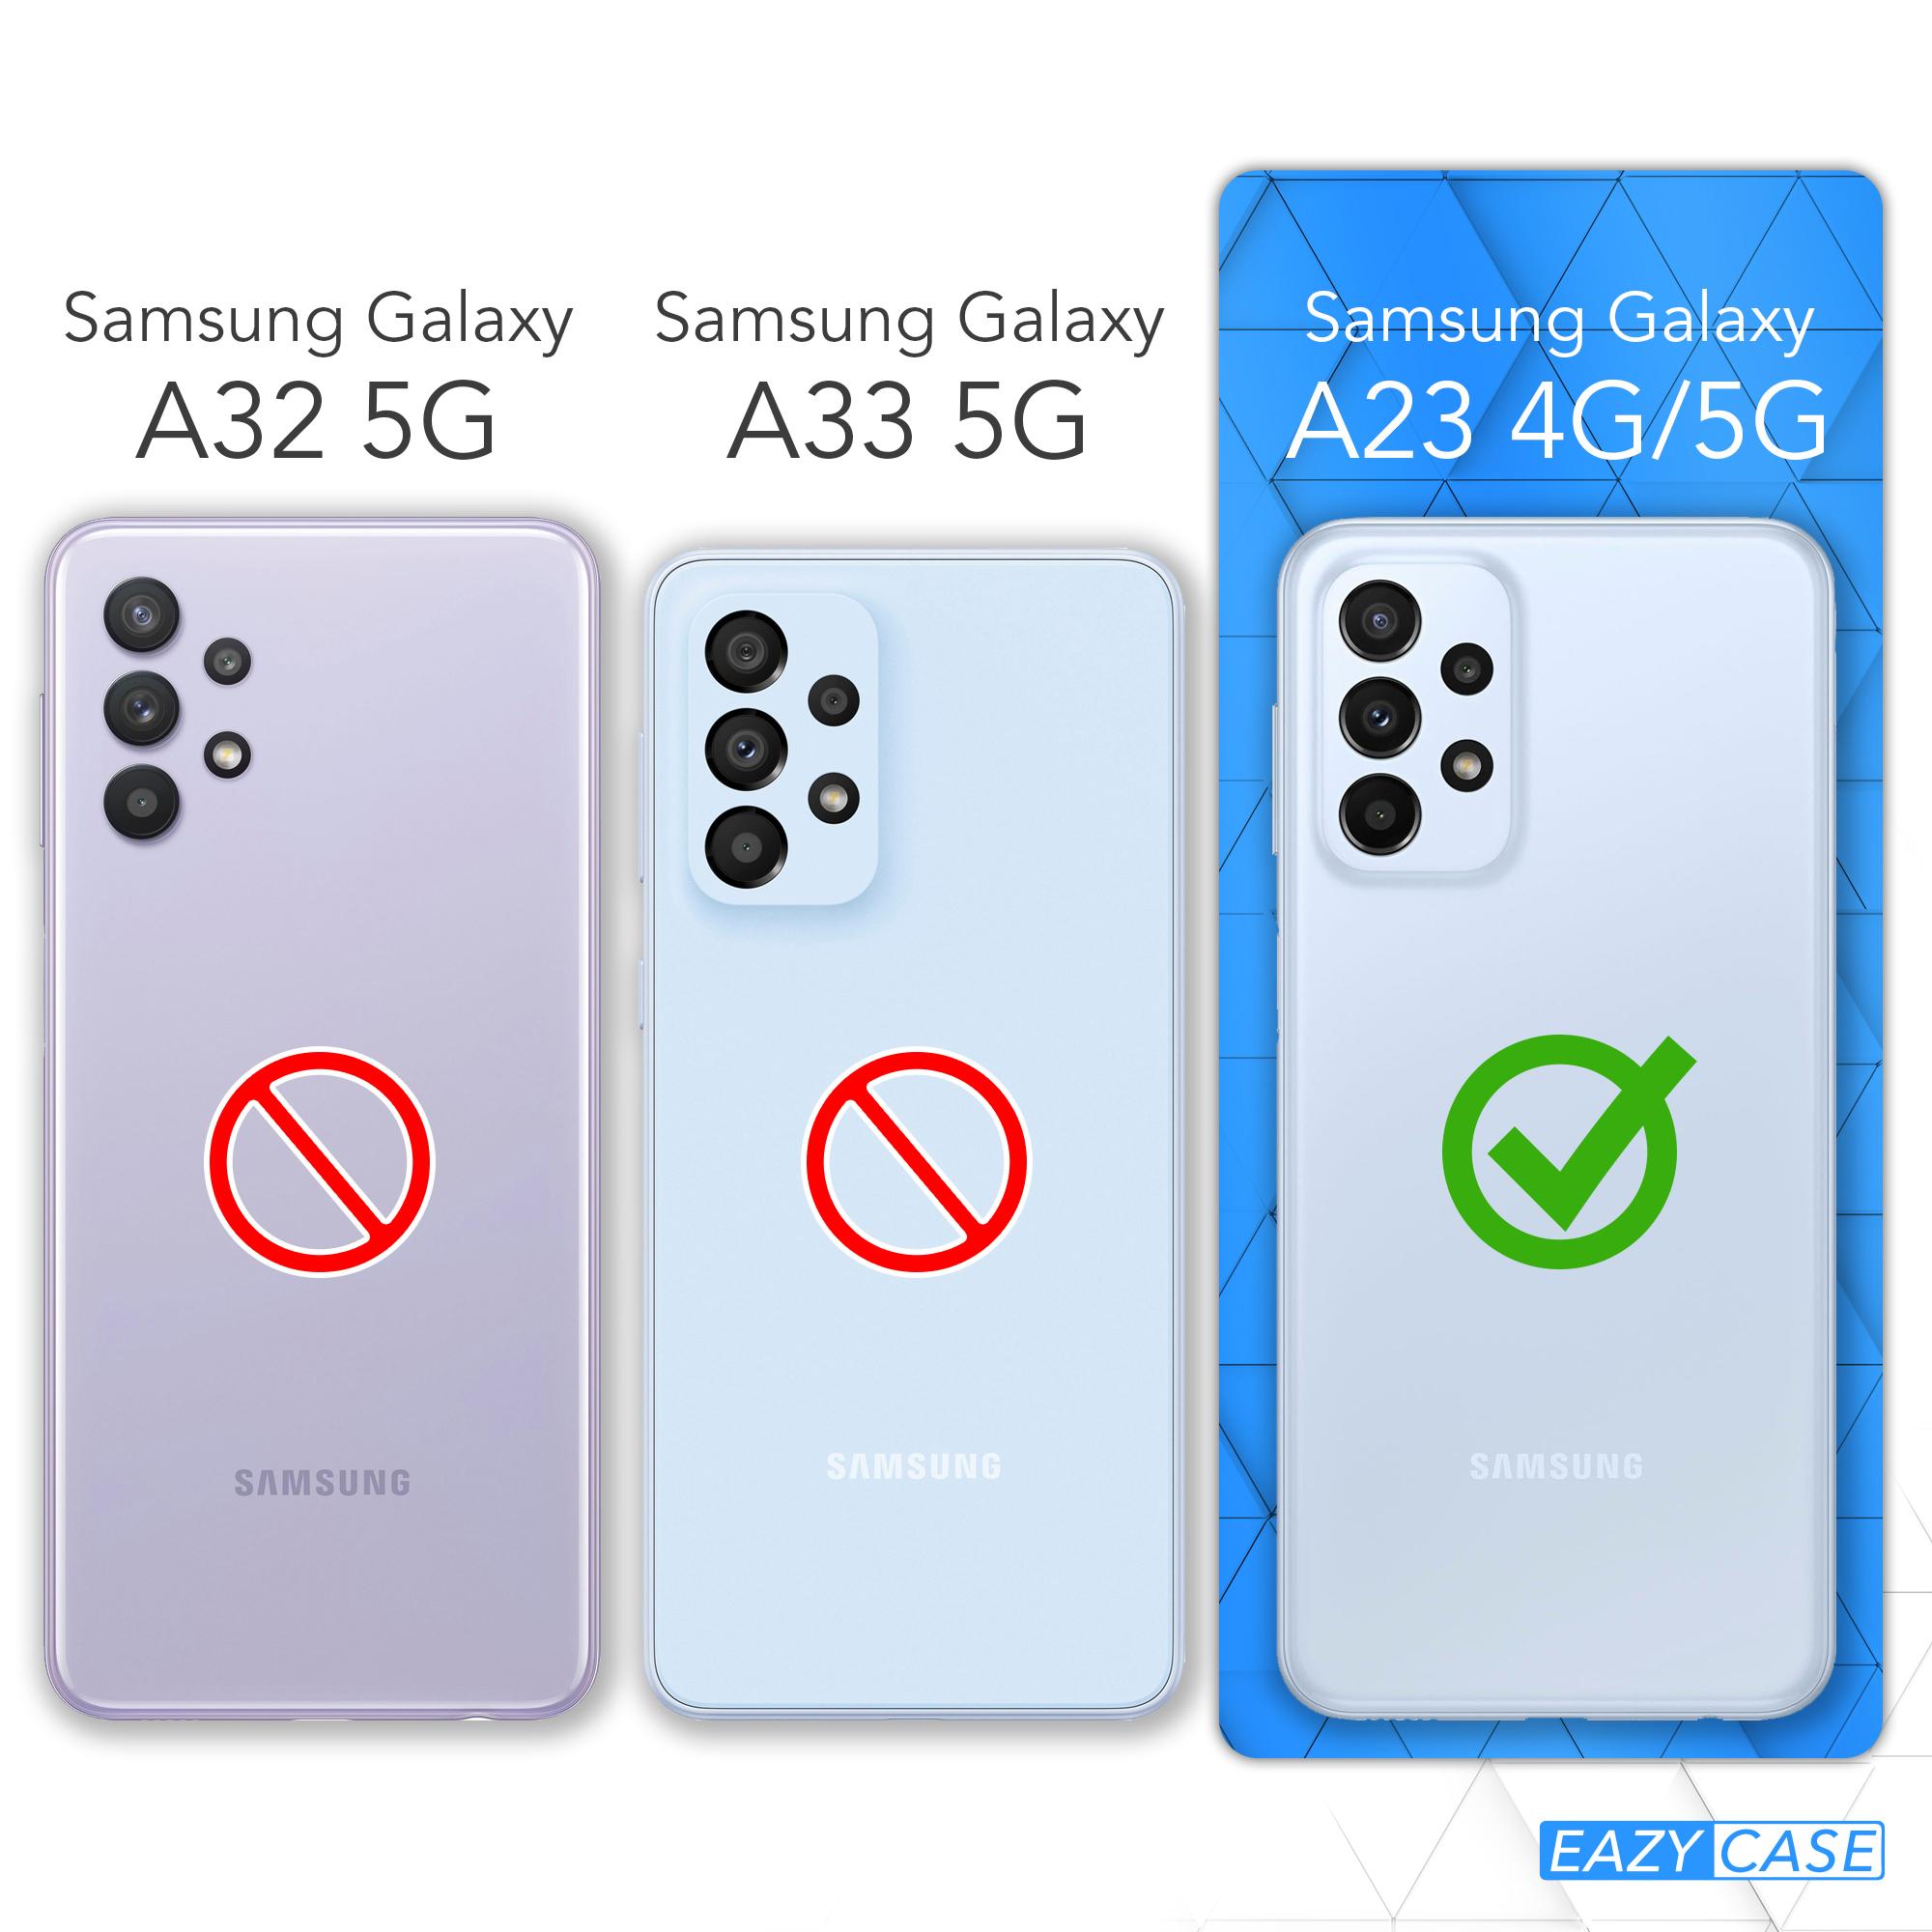 EAZY CASE TPU Silikon Handycase A23 Matt, Samsung, 5G, Backcover, Blau Petrol / Galaxy